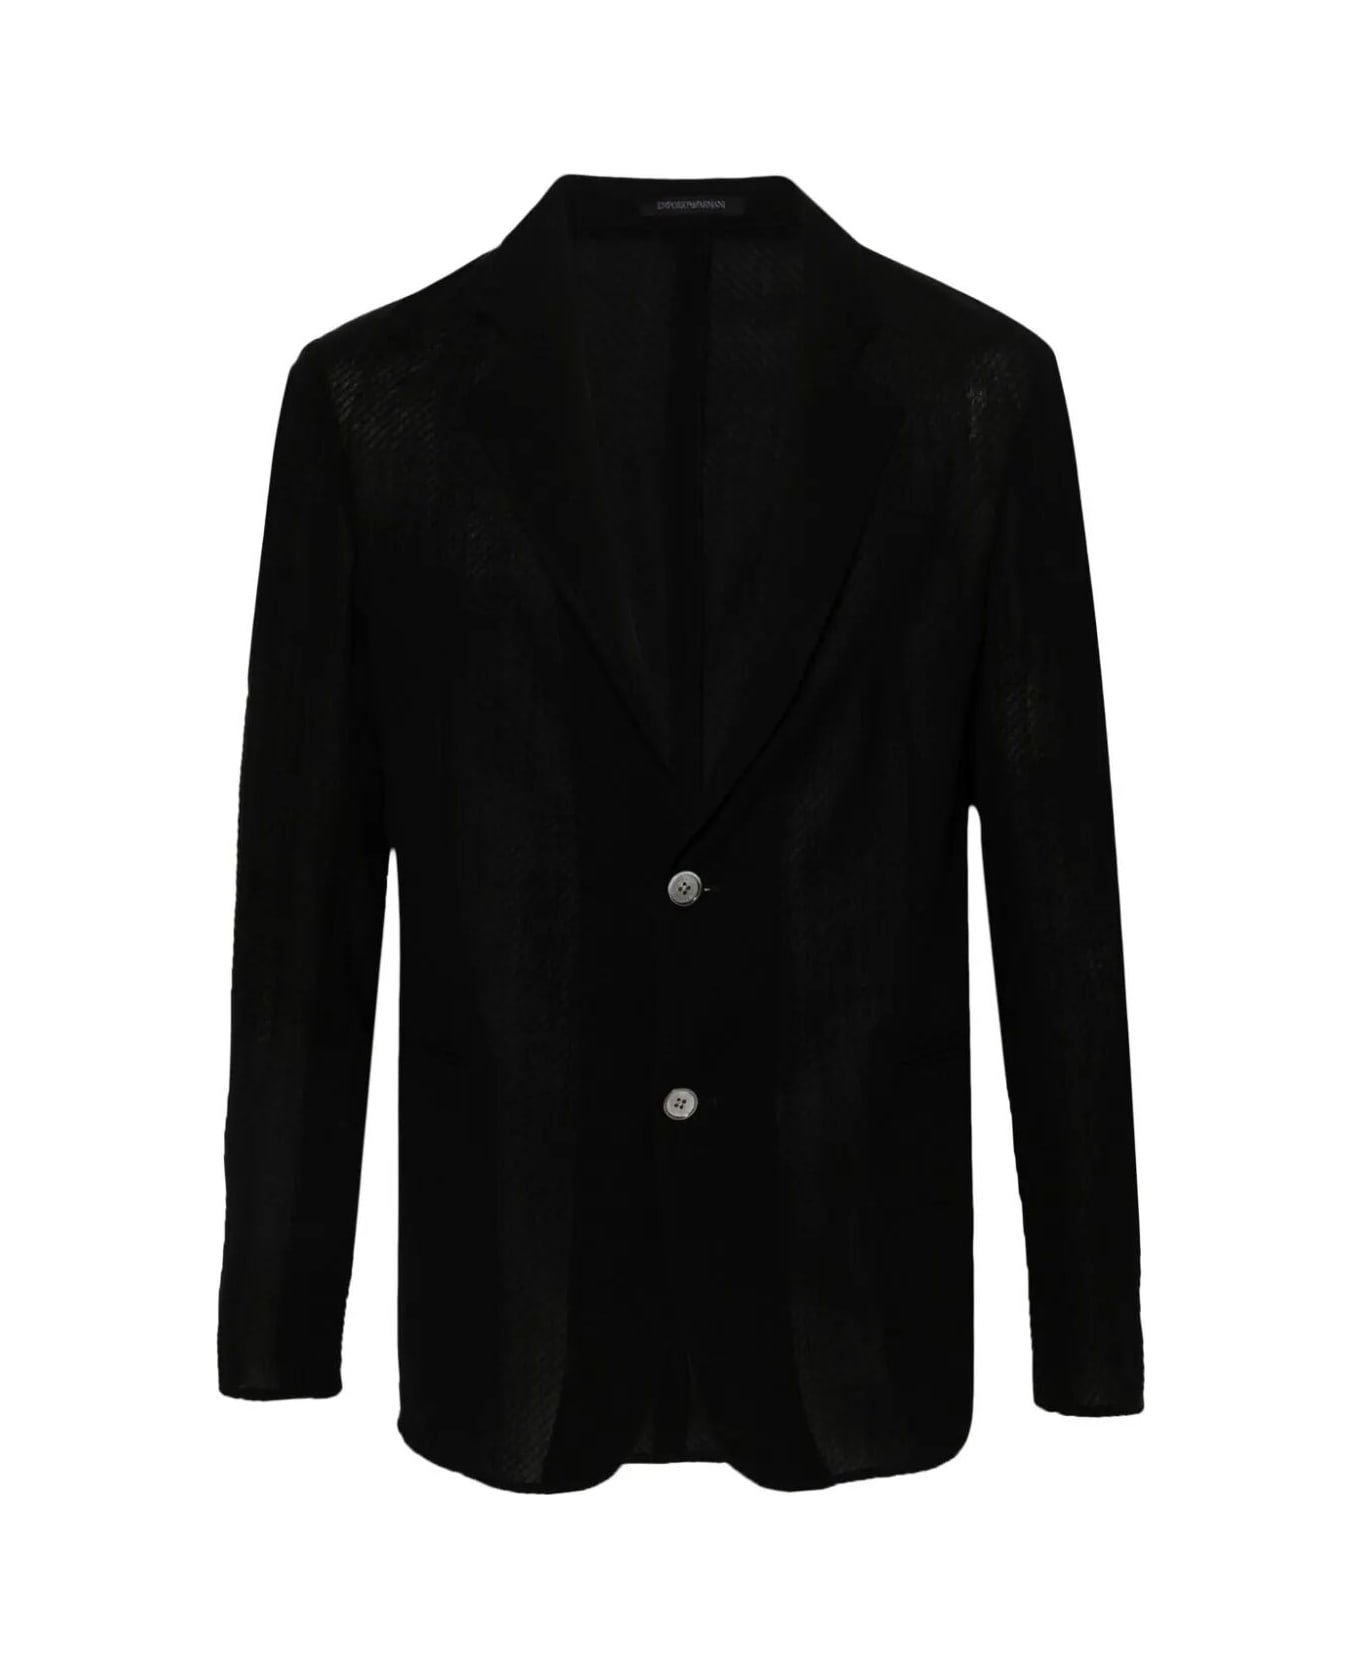 Emporio Armani Jacket - Black ブレザー